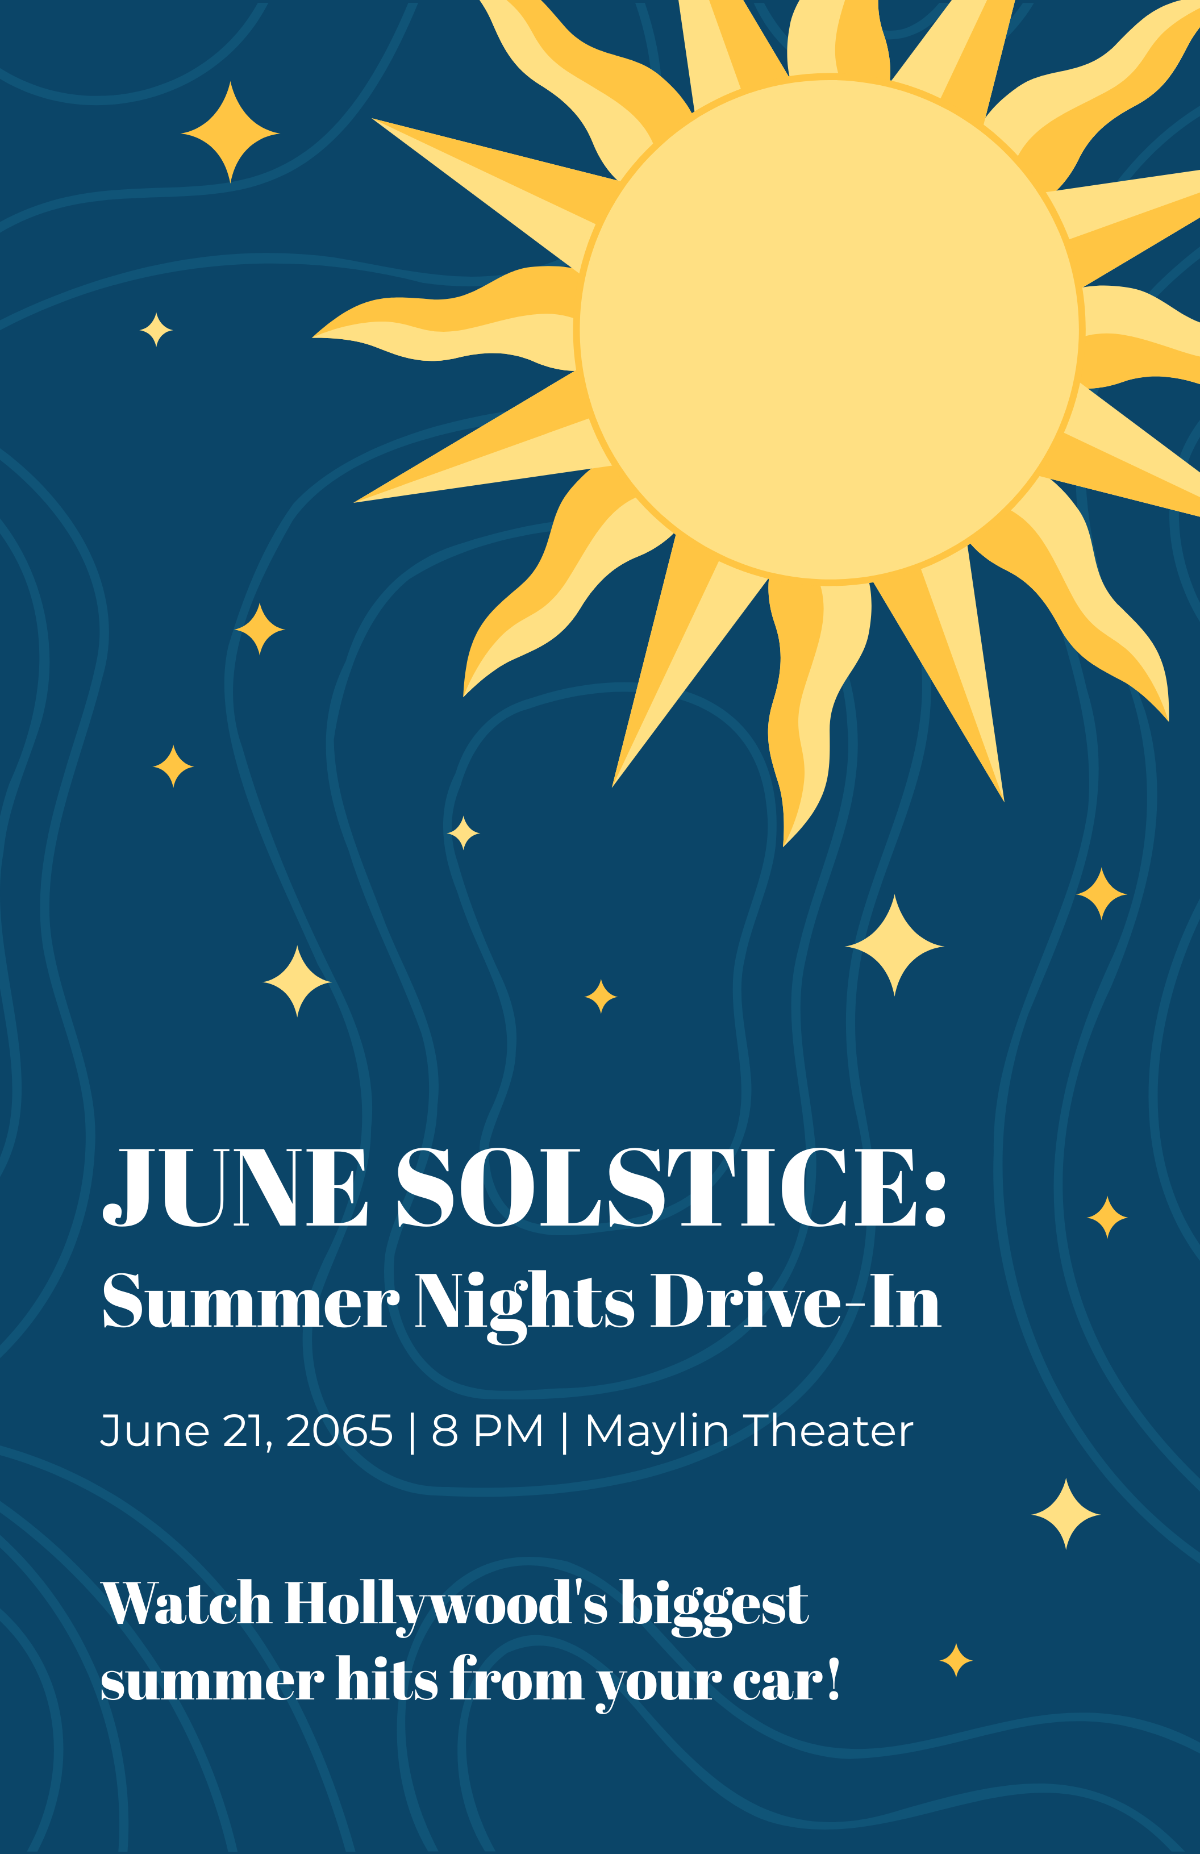 June Solstice Poster Template